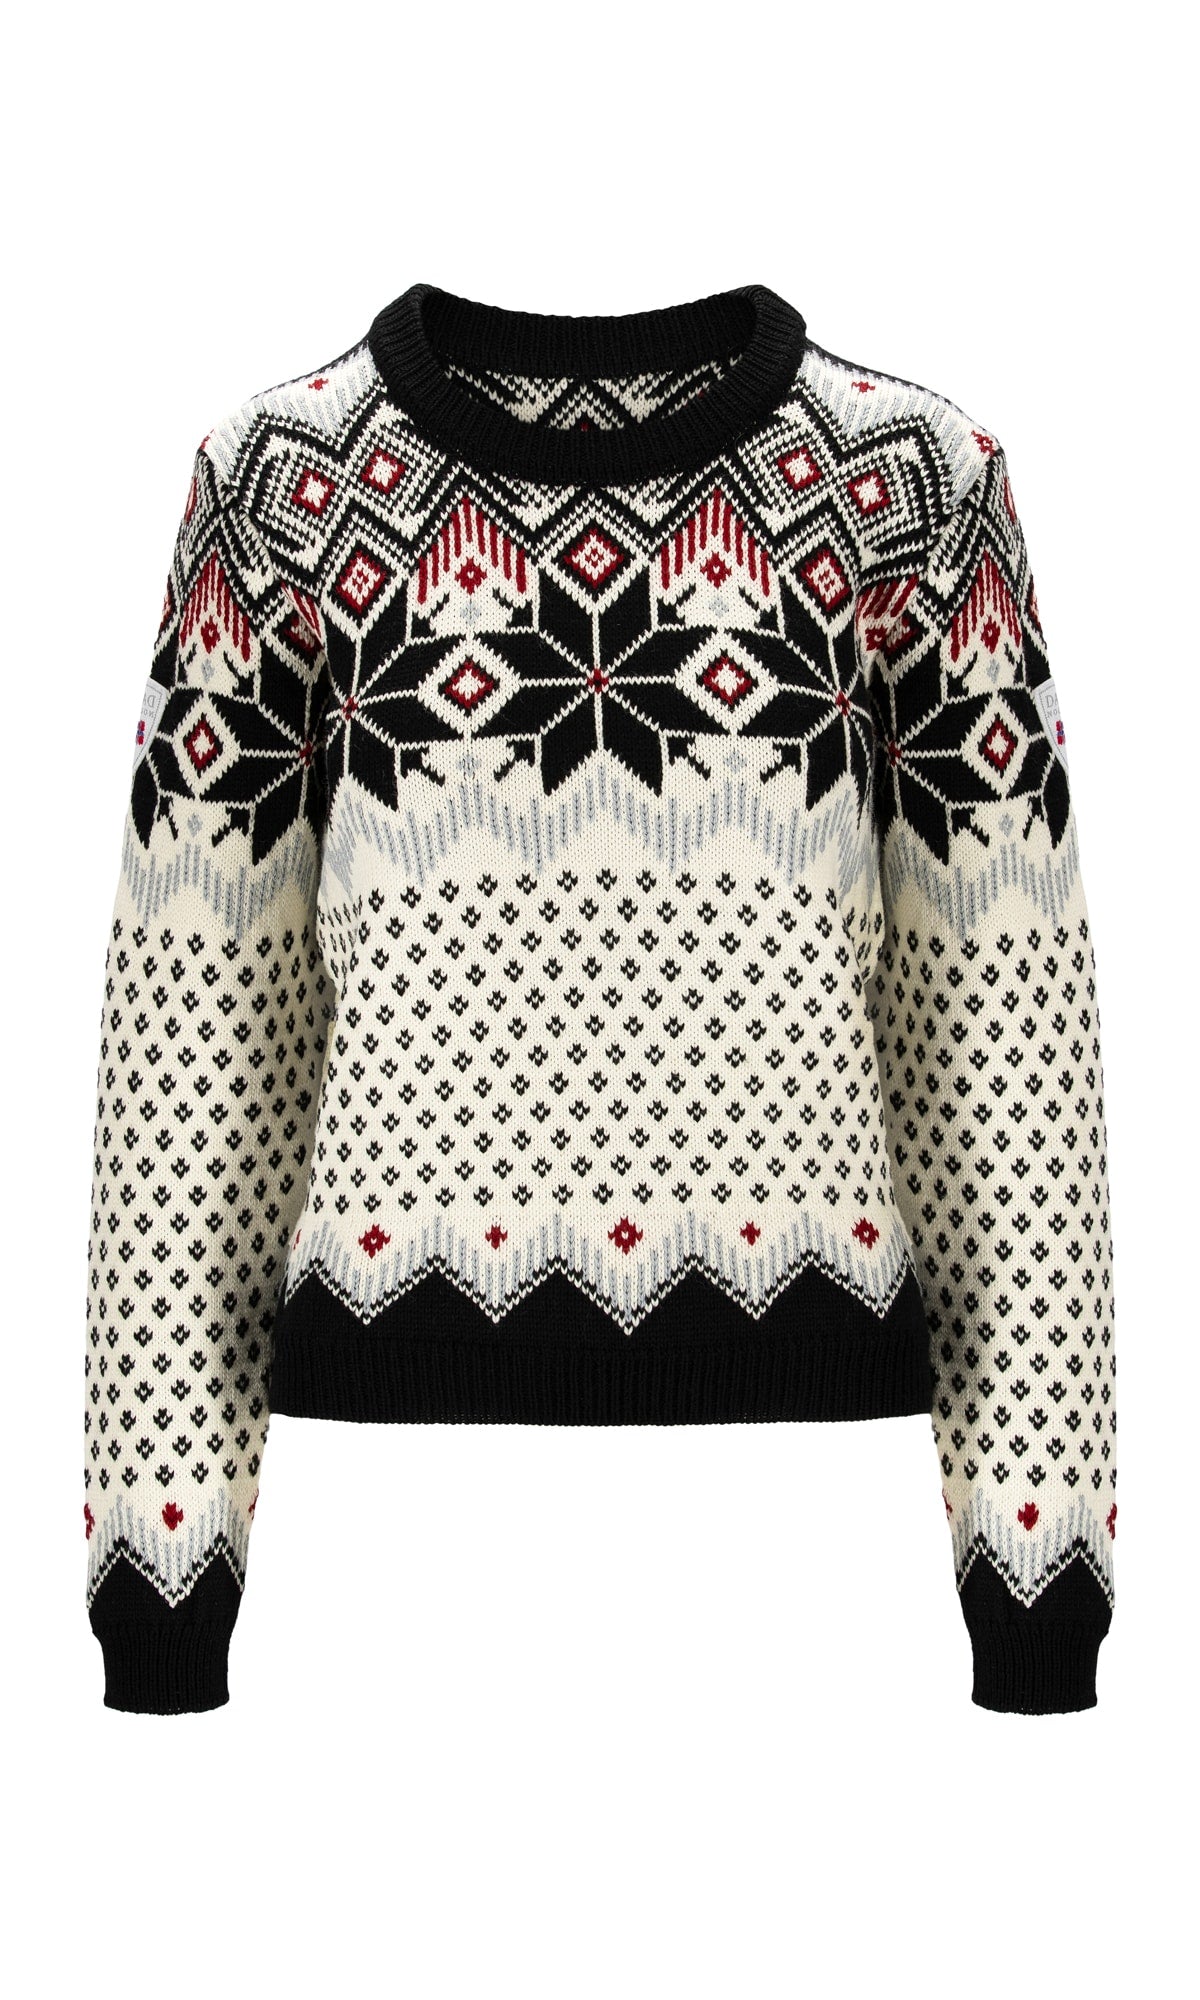 Dale of Norway Women's Vilja Knit Sweater (Past Season)